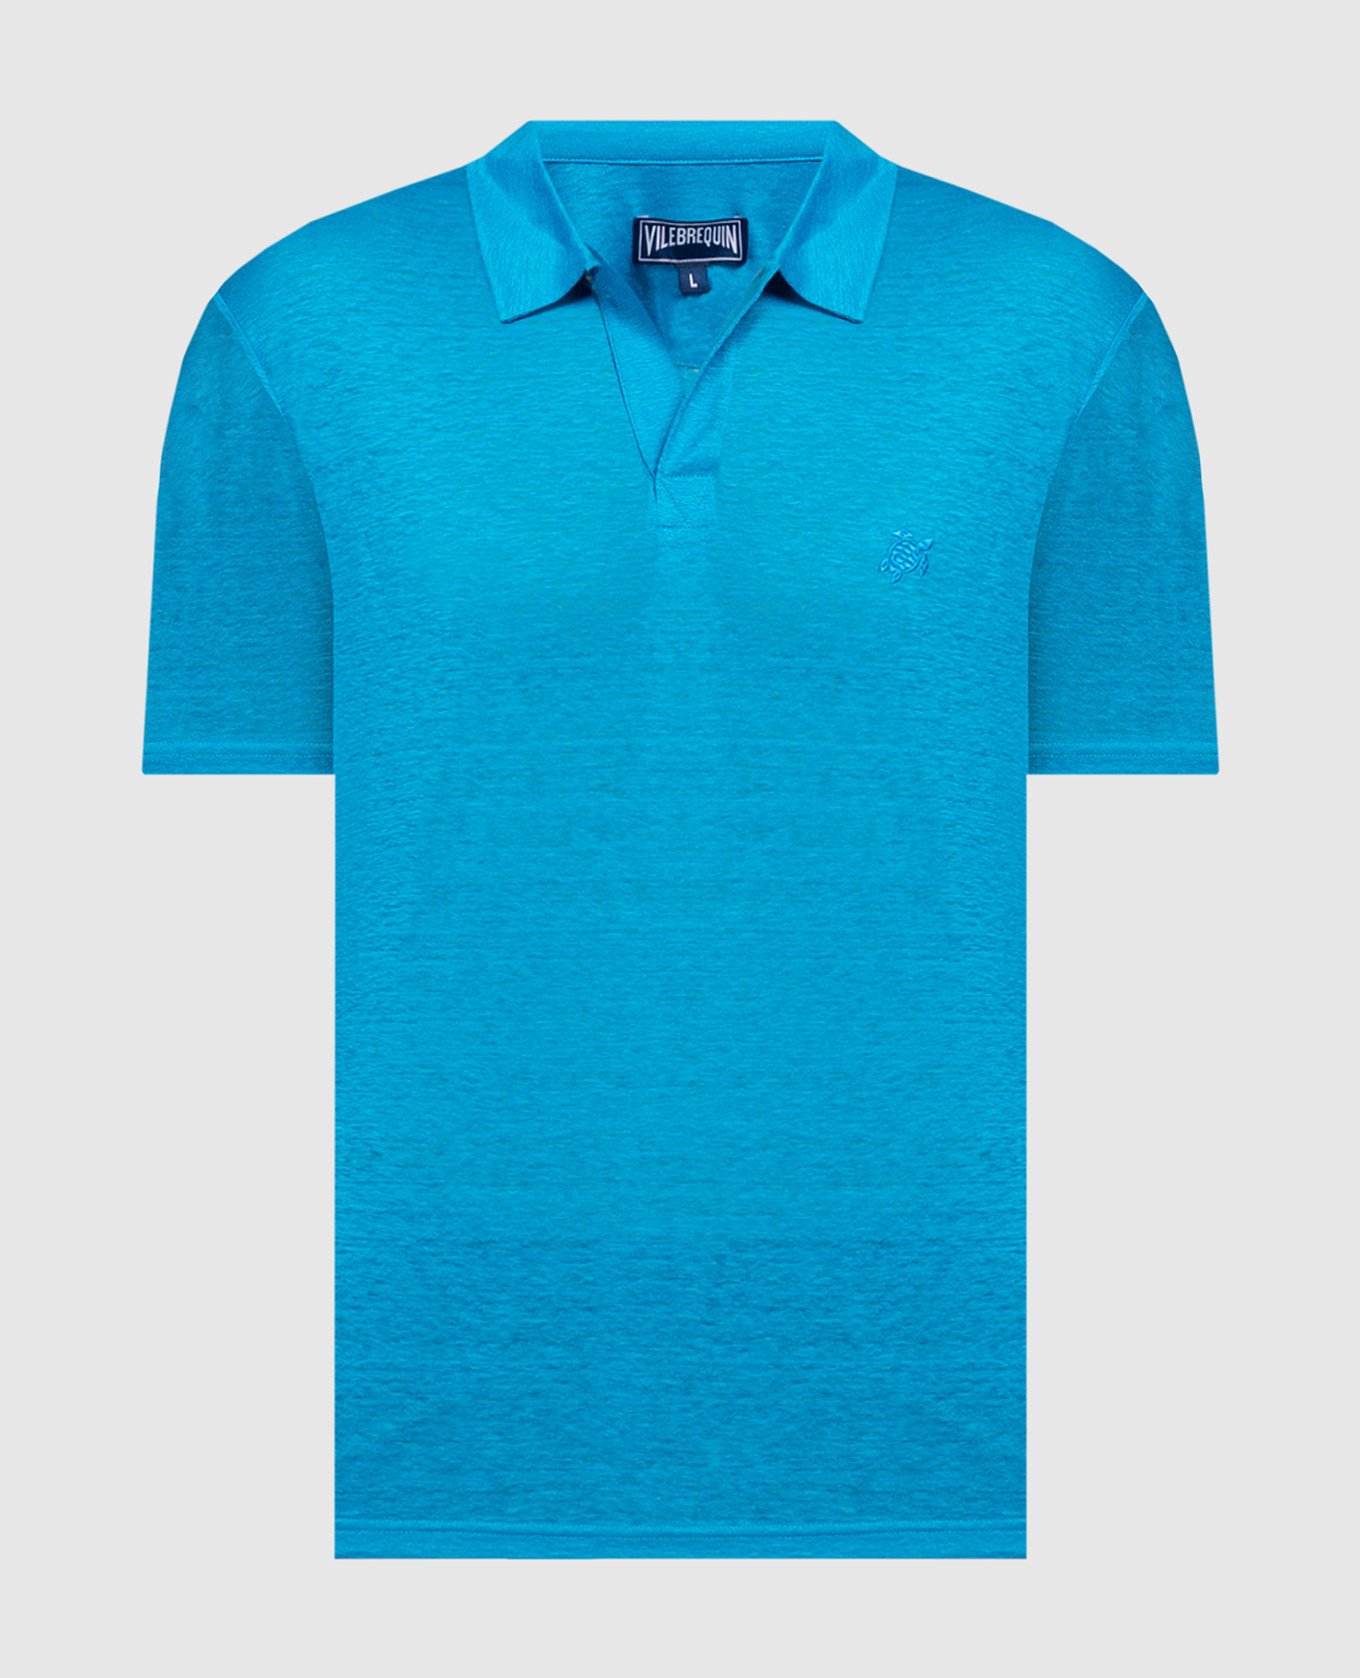 Голубая футболка из льна с вышивкой логотипа